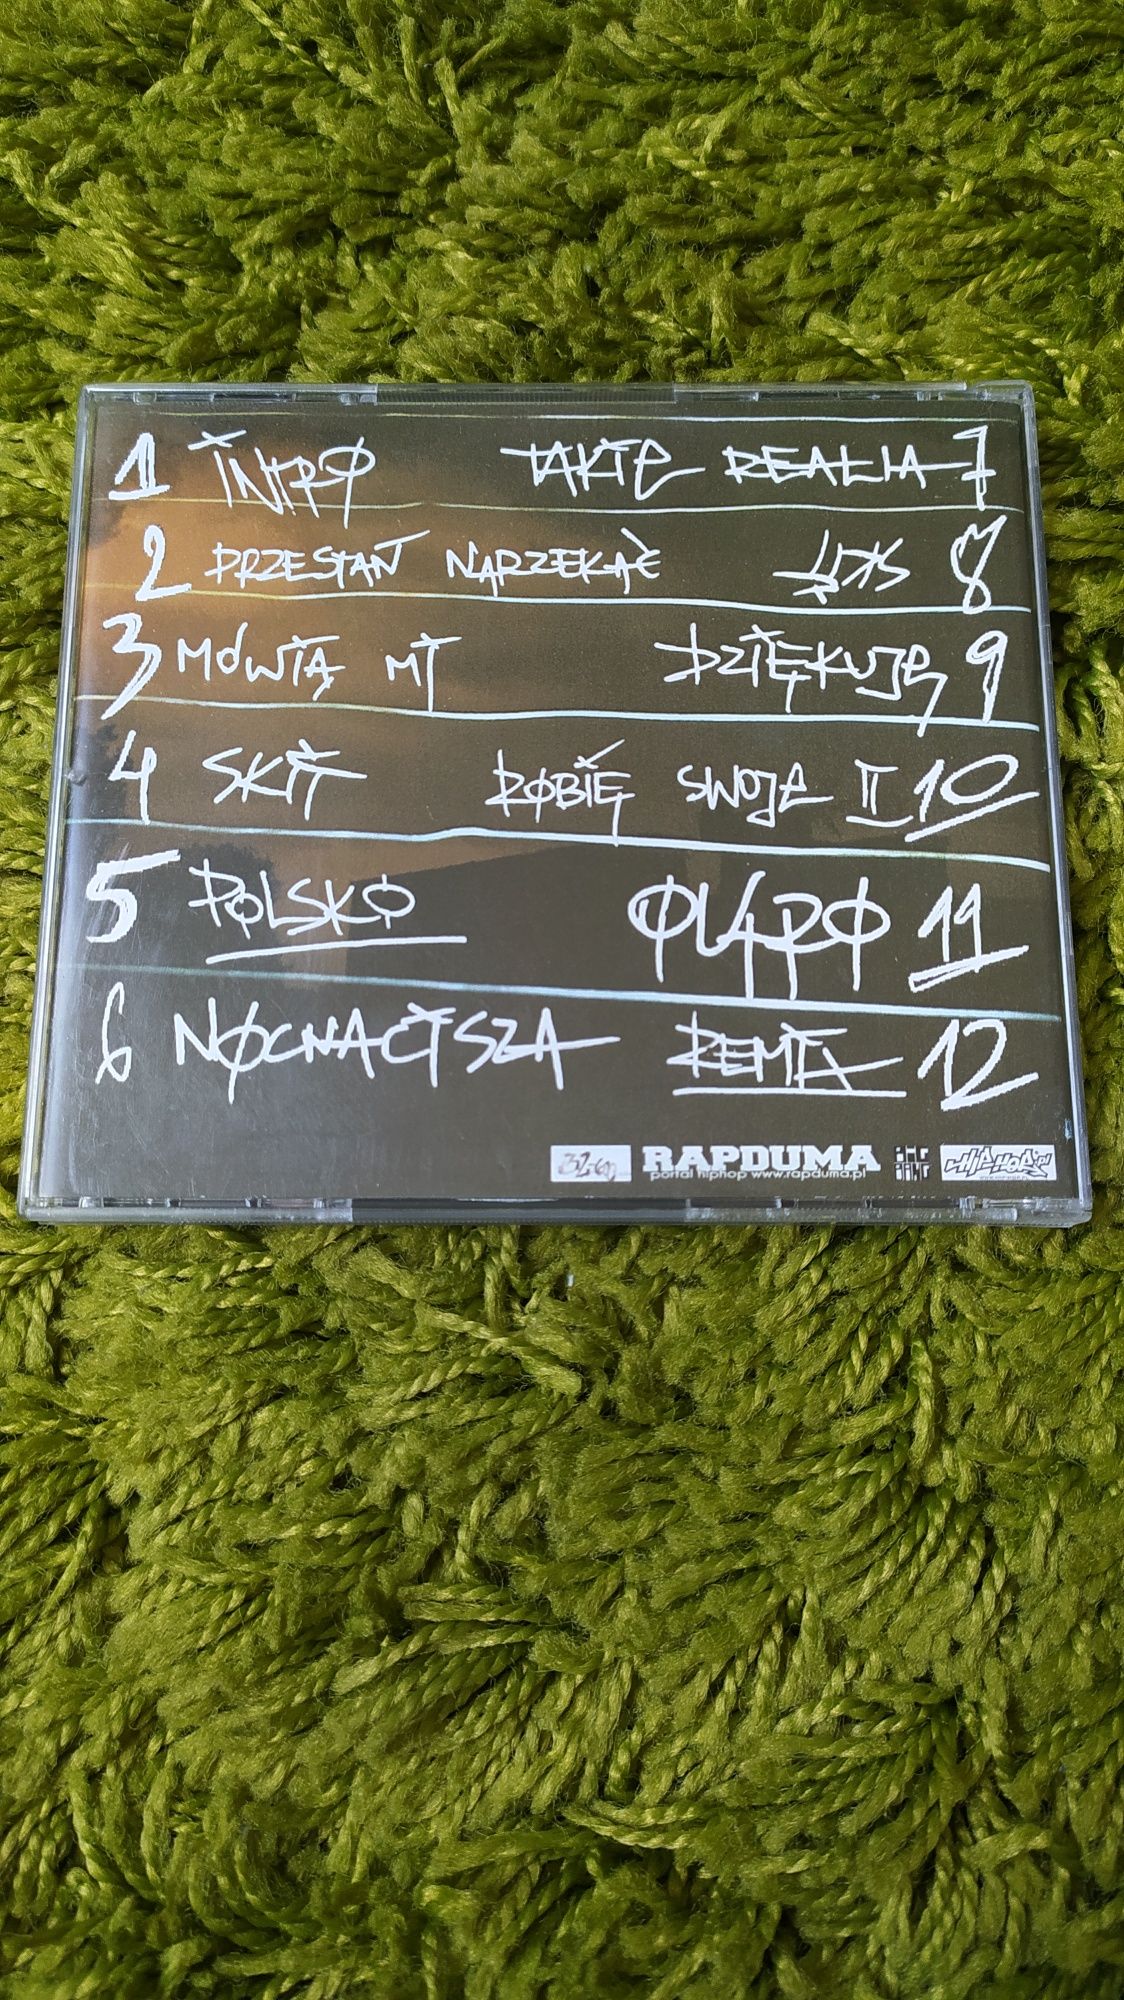 Płyta CD- Ryży- 1 sort